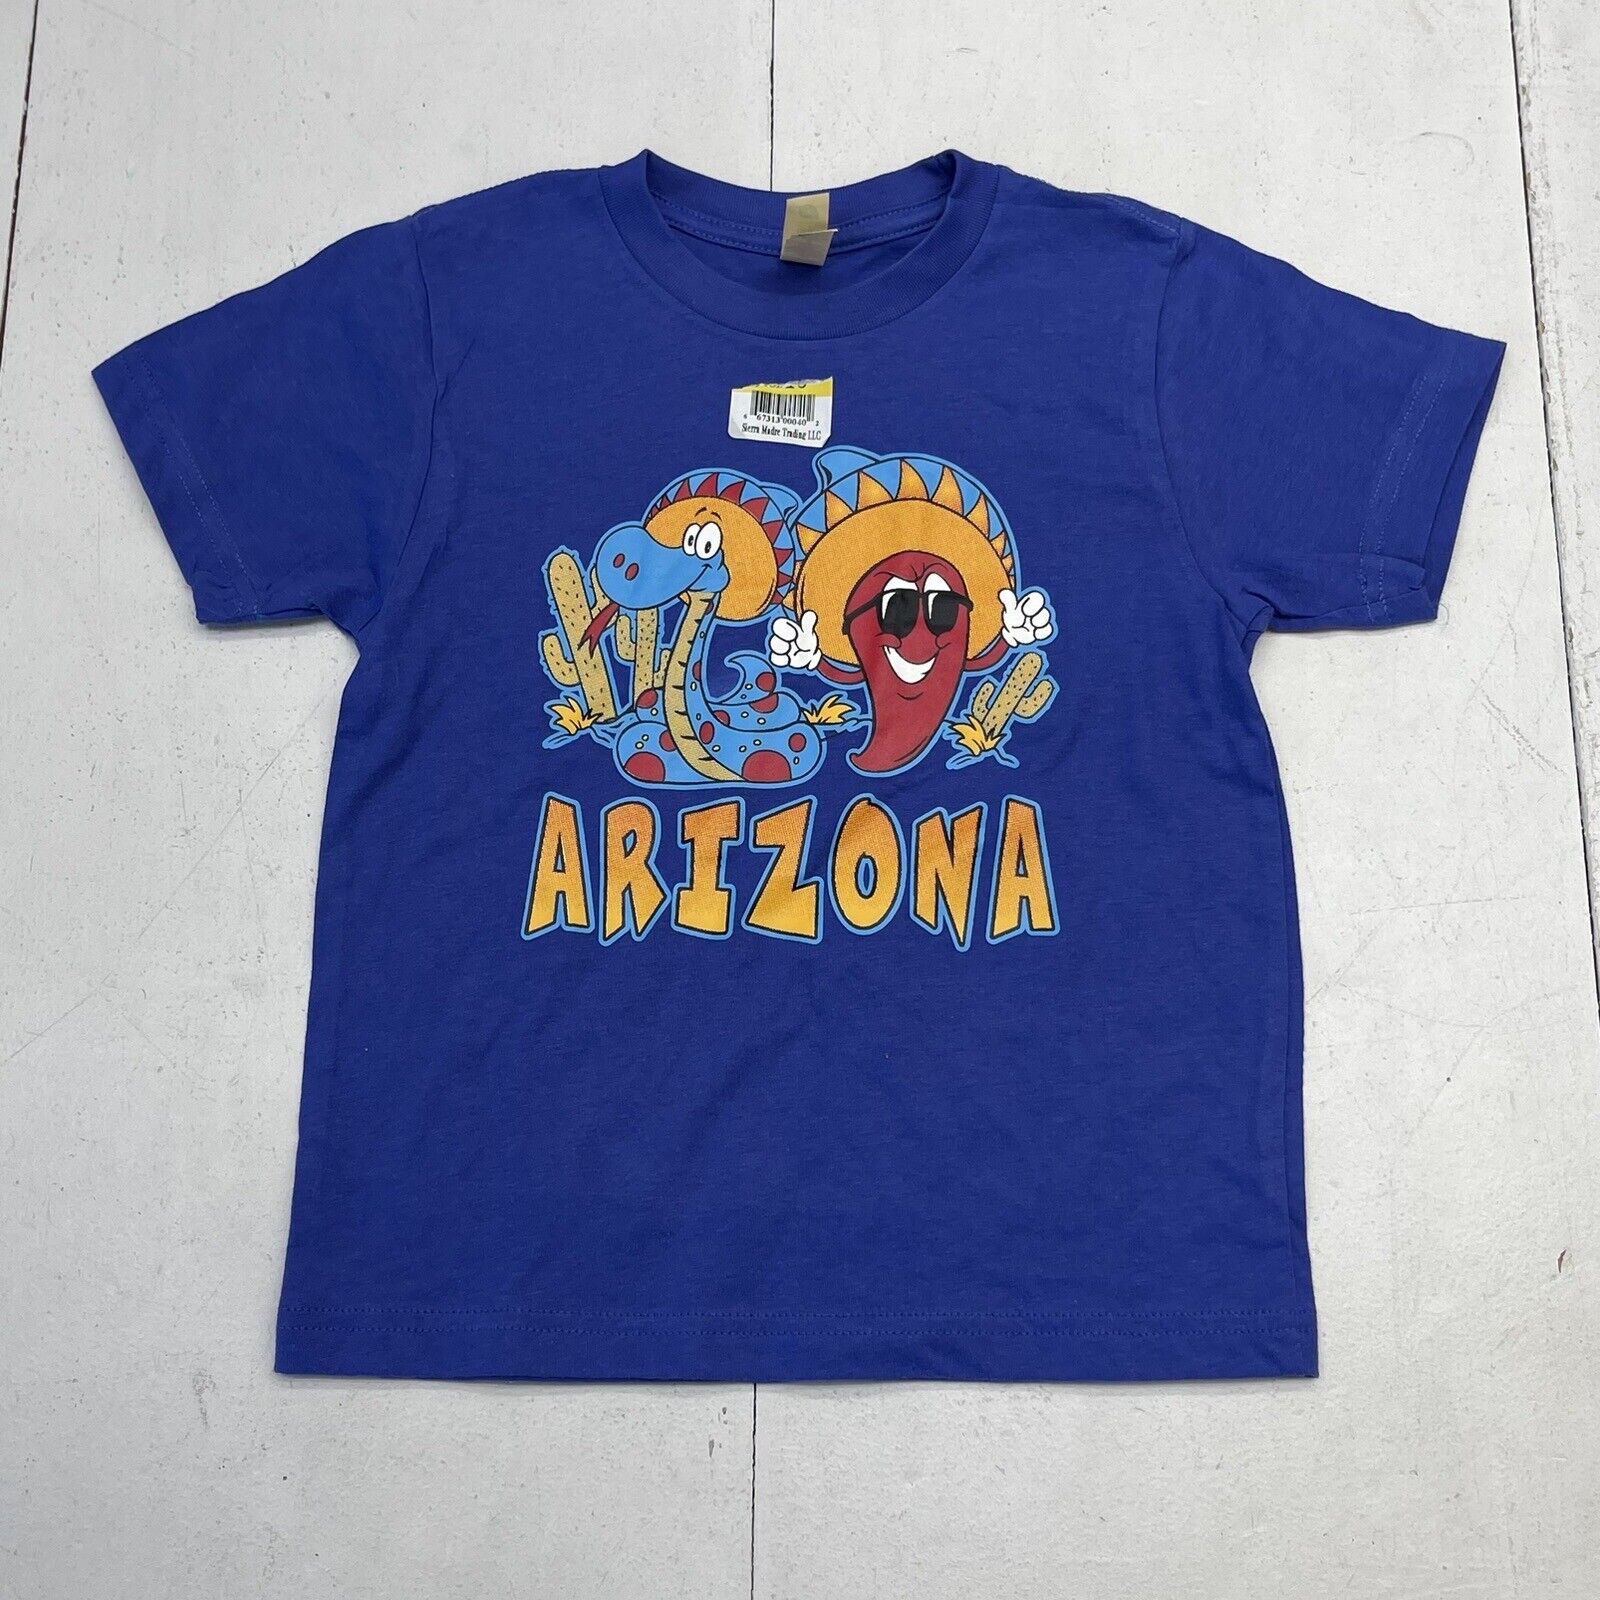 Next Level Blue Arizona Graphic Short Sleeve T Shirt Youth Kids XS NWOT